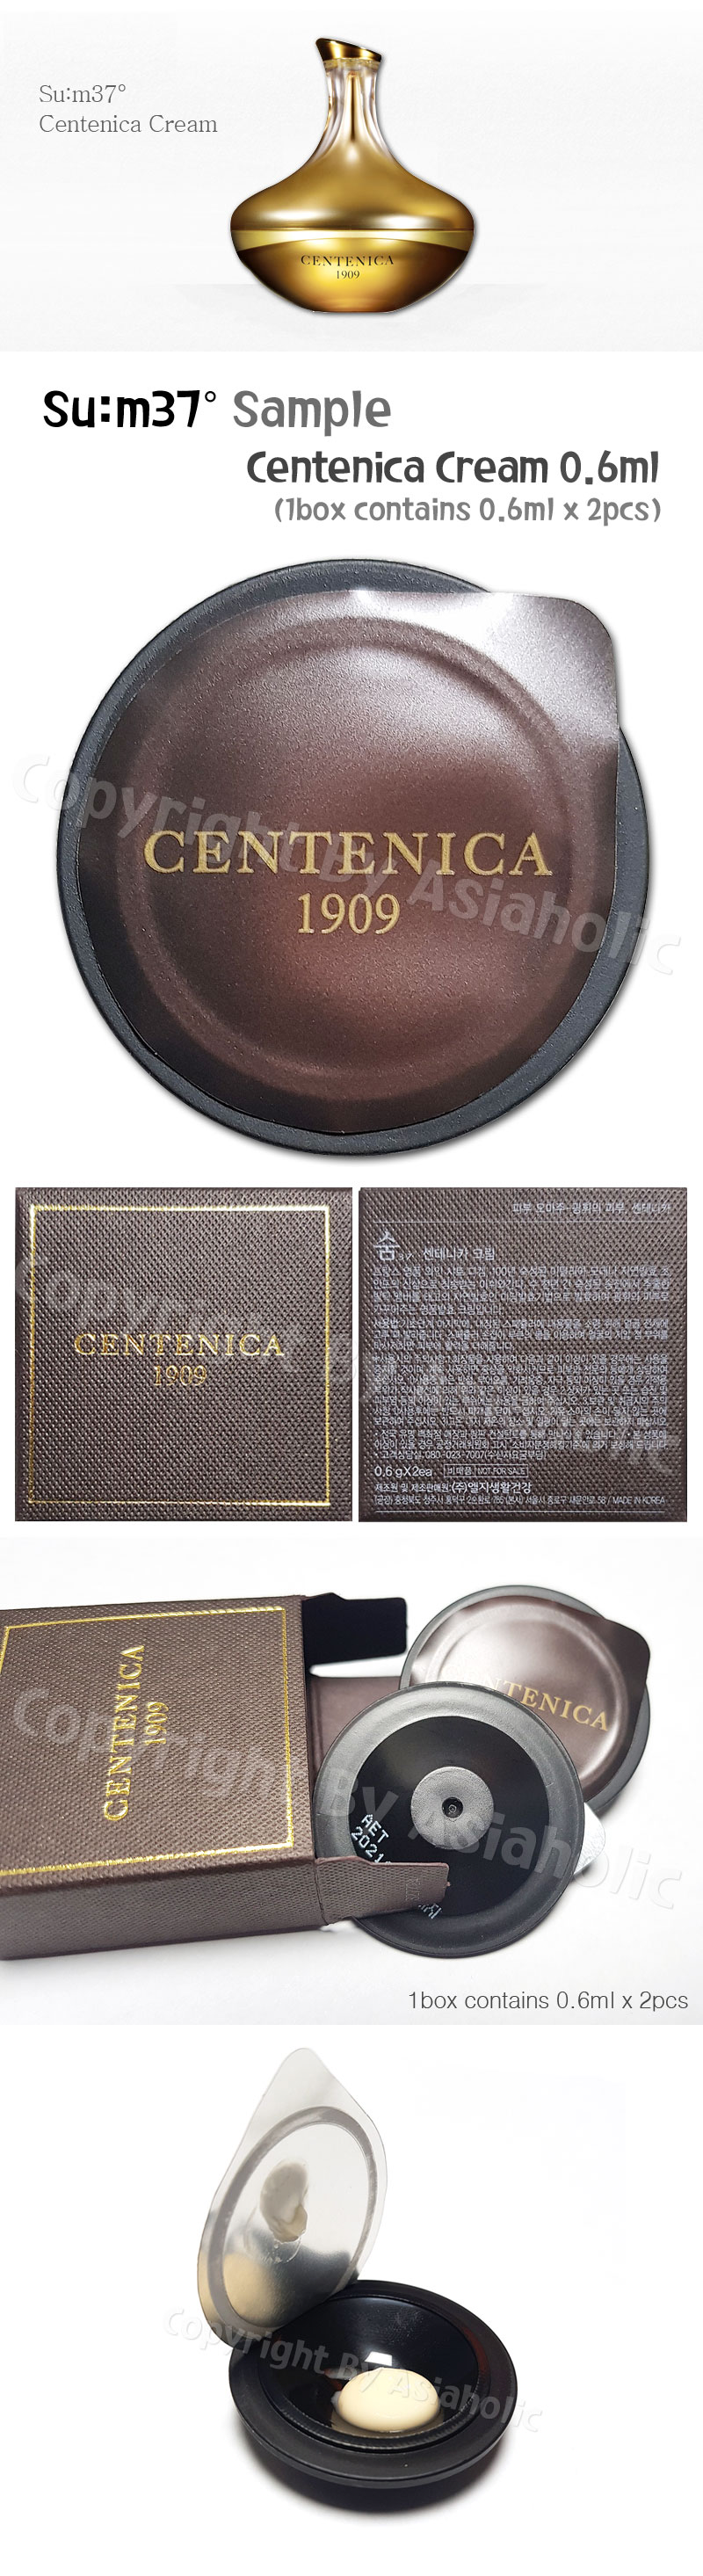 SU:M37 Centenica Cream 0.6ml x 20pcs (10Box) Premium Sample Sum37 Newest Version